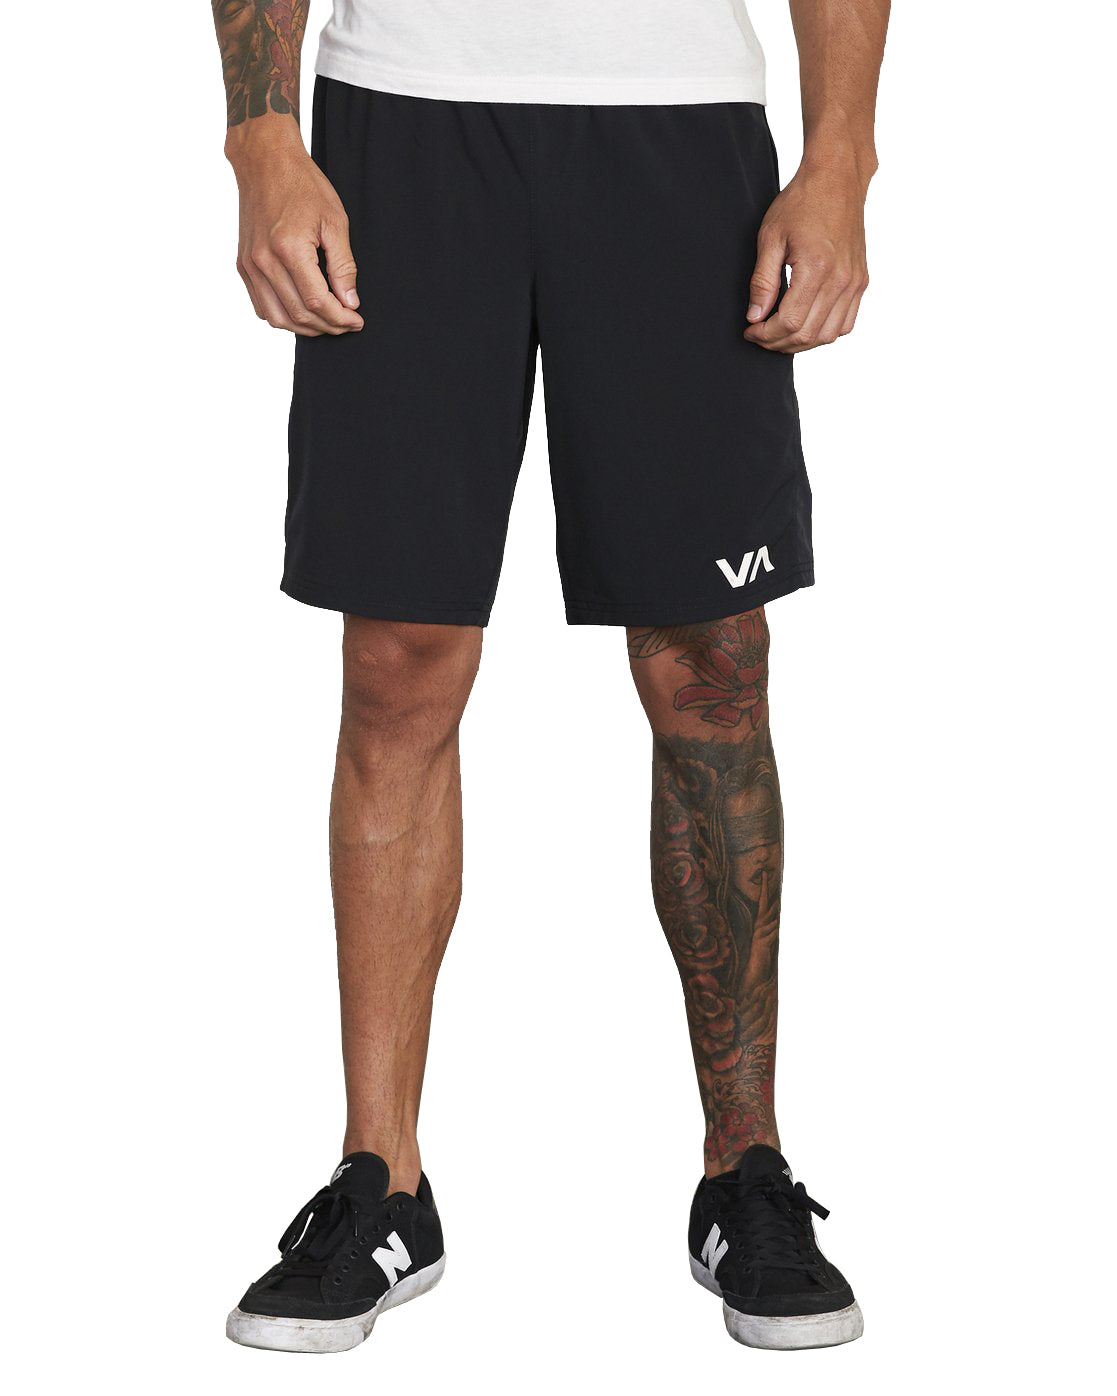 RVCA Yogger All Day Shorts BLK S